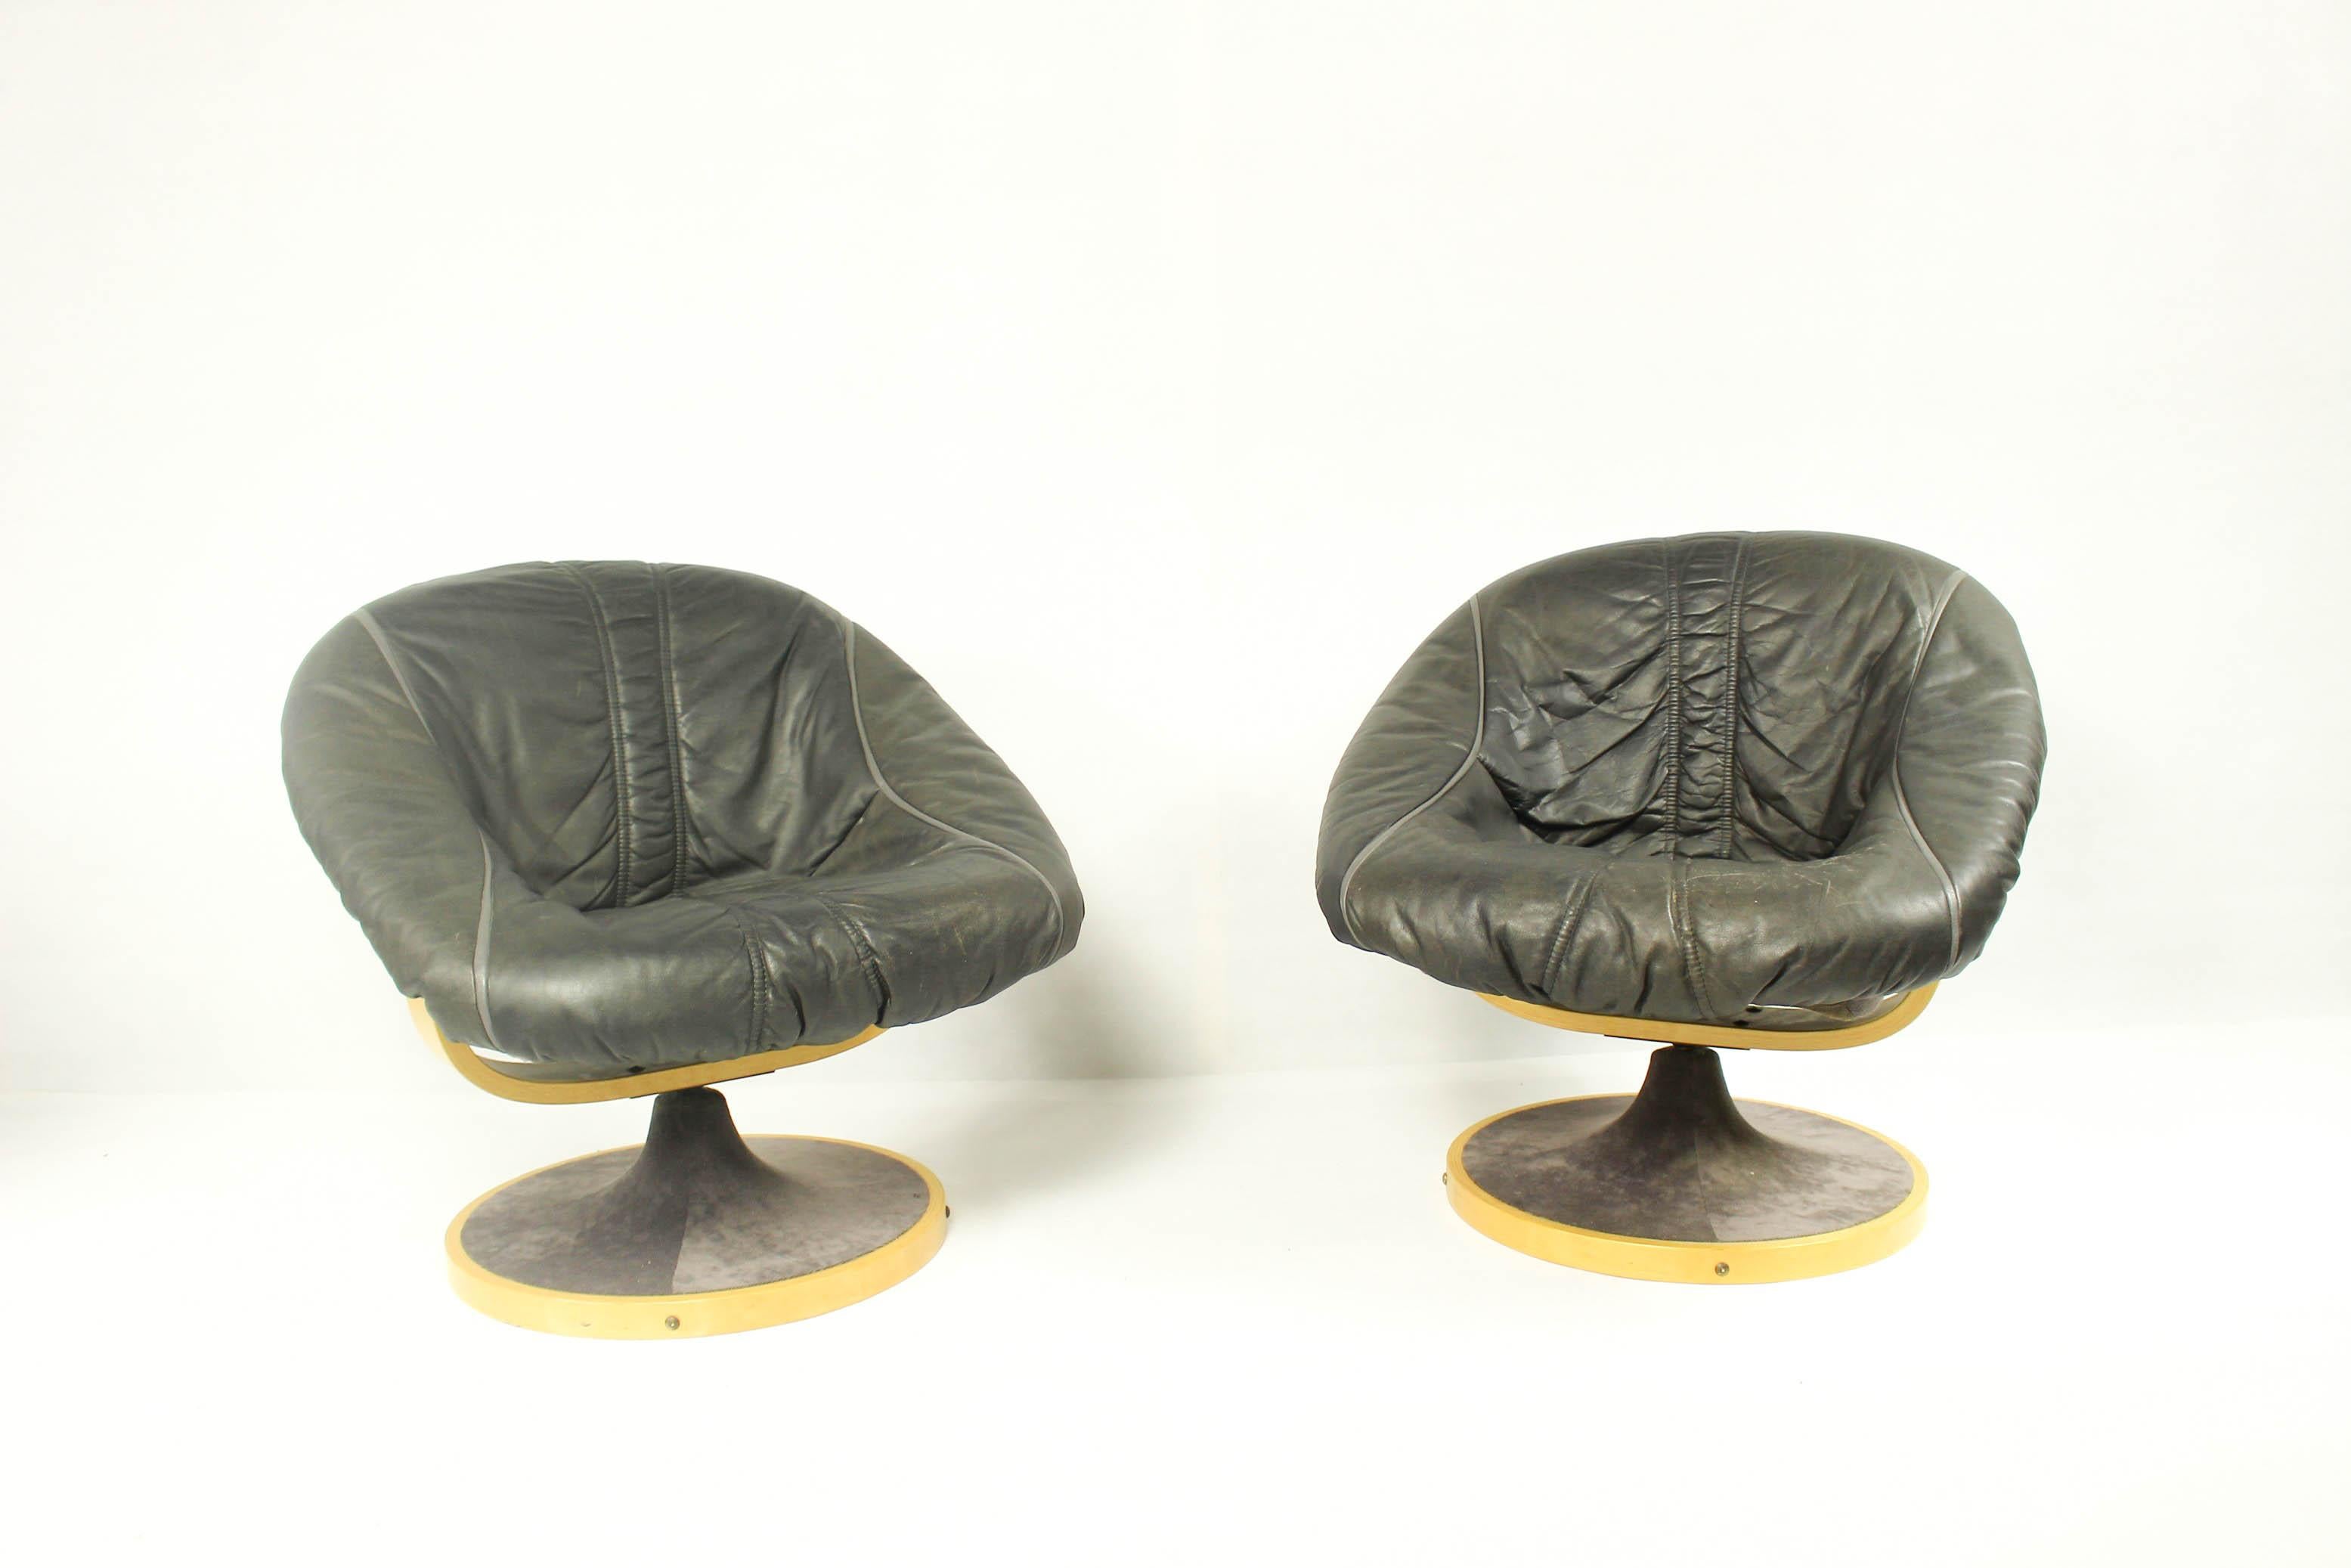 Chaise pivotante scandinave des années 1970.
Fabriqué par Galvano.
Coussins amovibles en cuir brun original, construction stable.
Prix par paire.